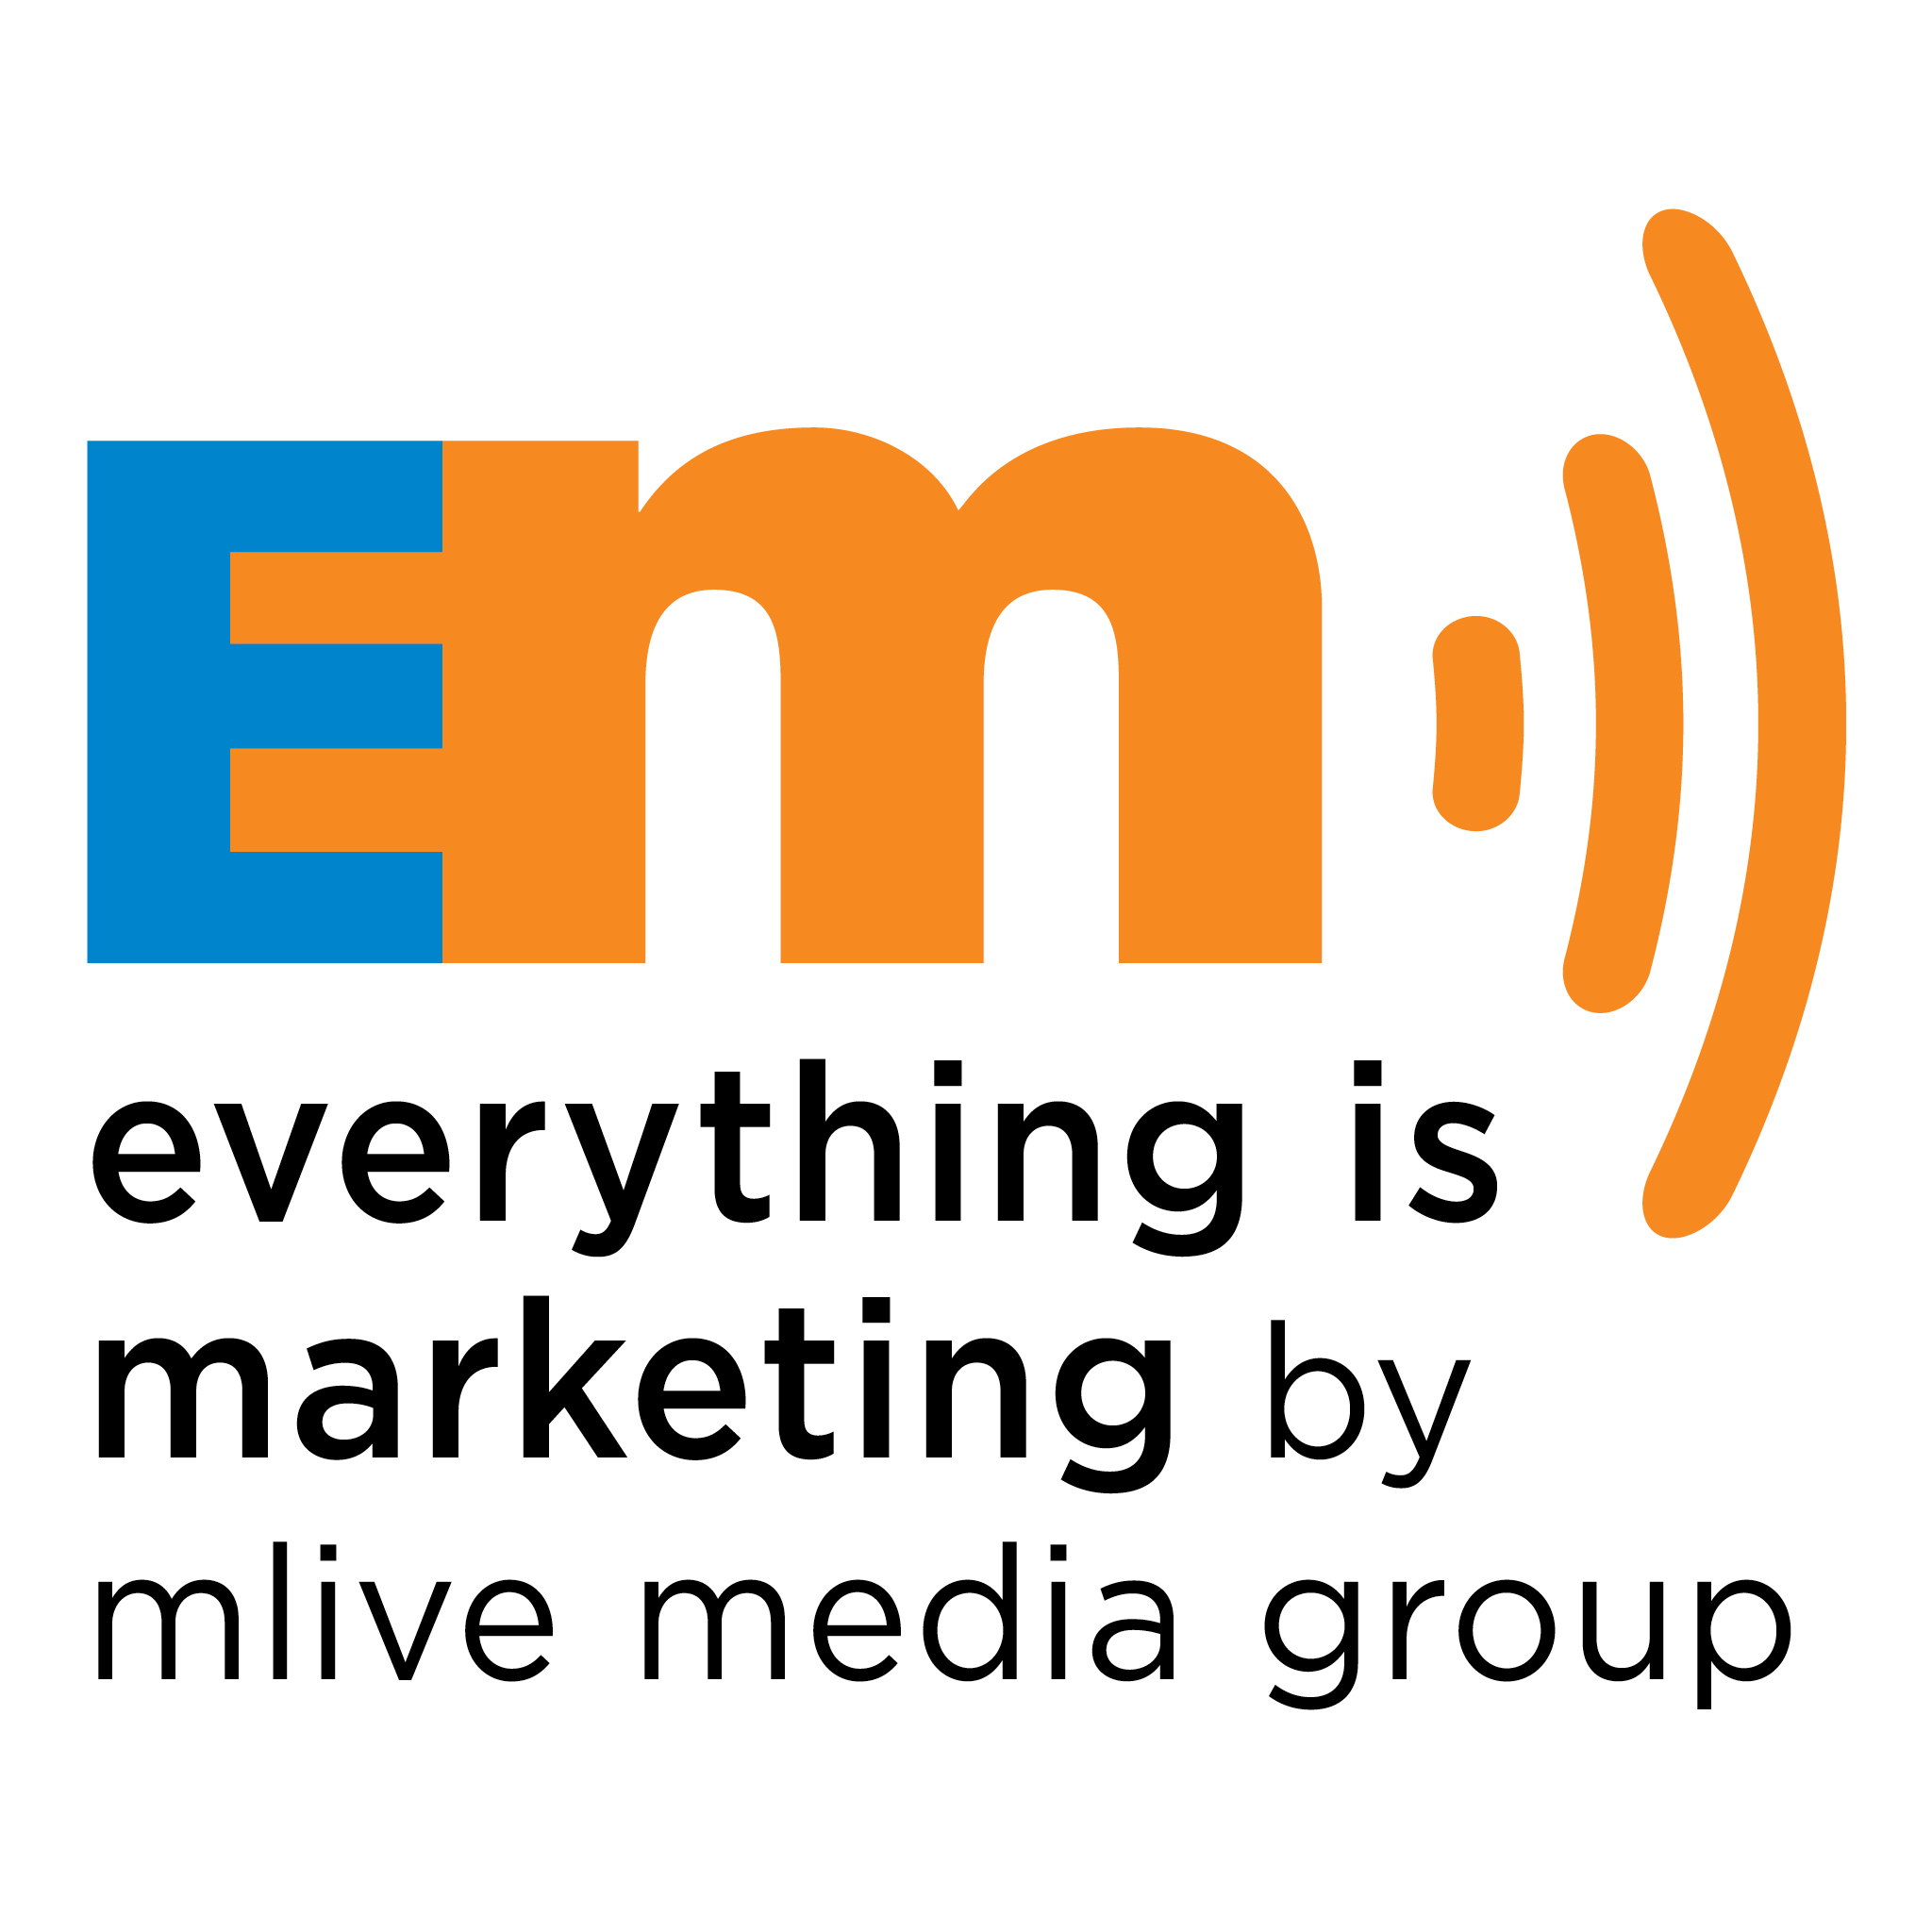 EP 203: Media spend vs media consumption